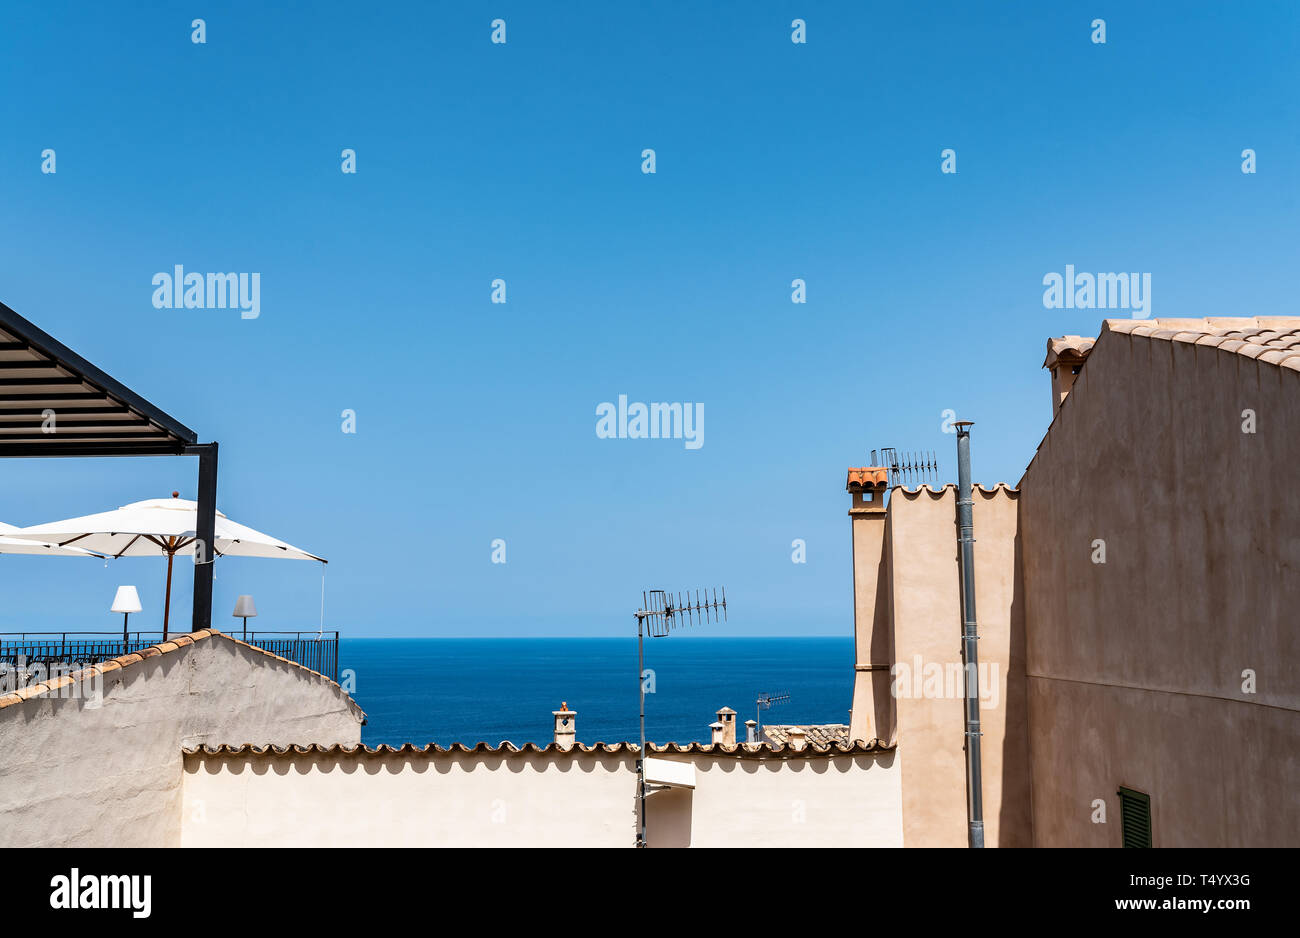 Strahlend blauer Himmel und Ozean über den Dächern der typische alte Häuser im mediterranen Dorf Stockfoto